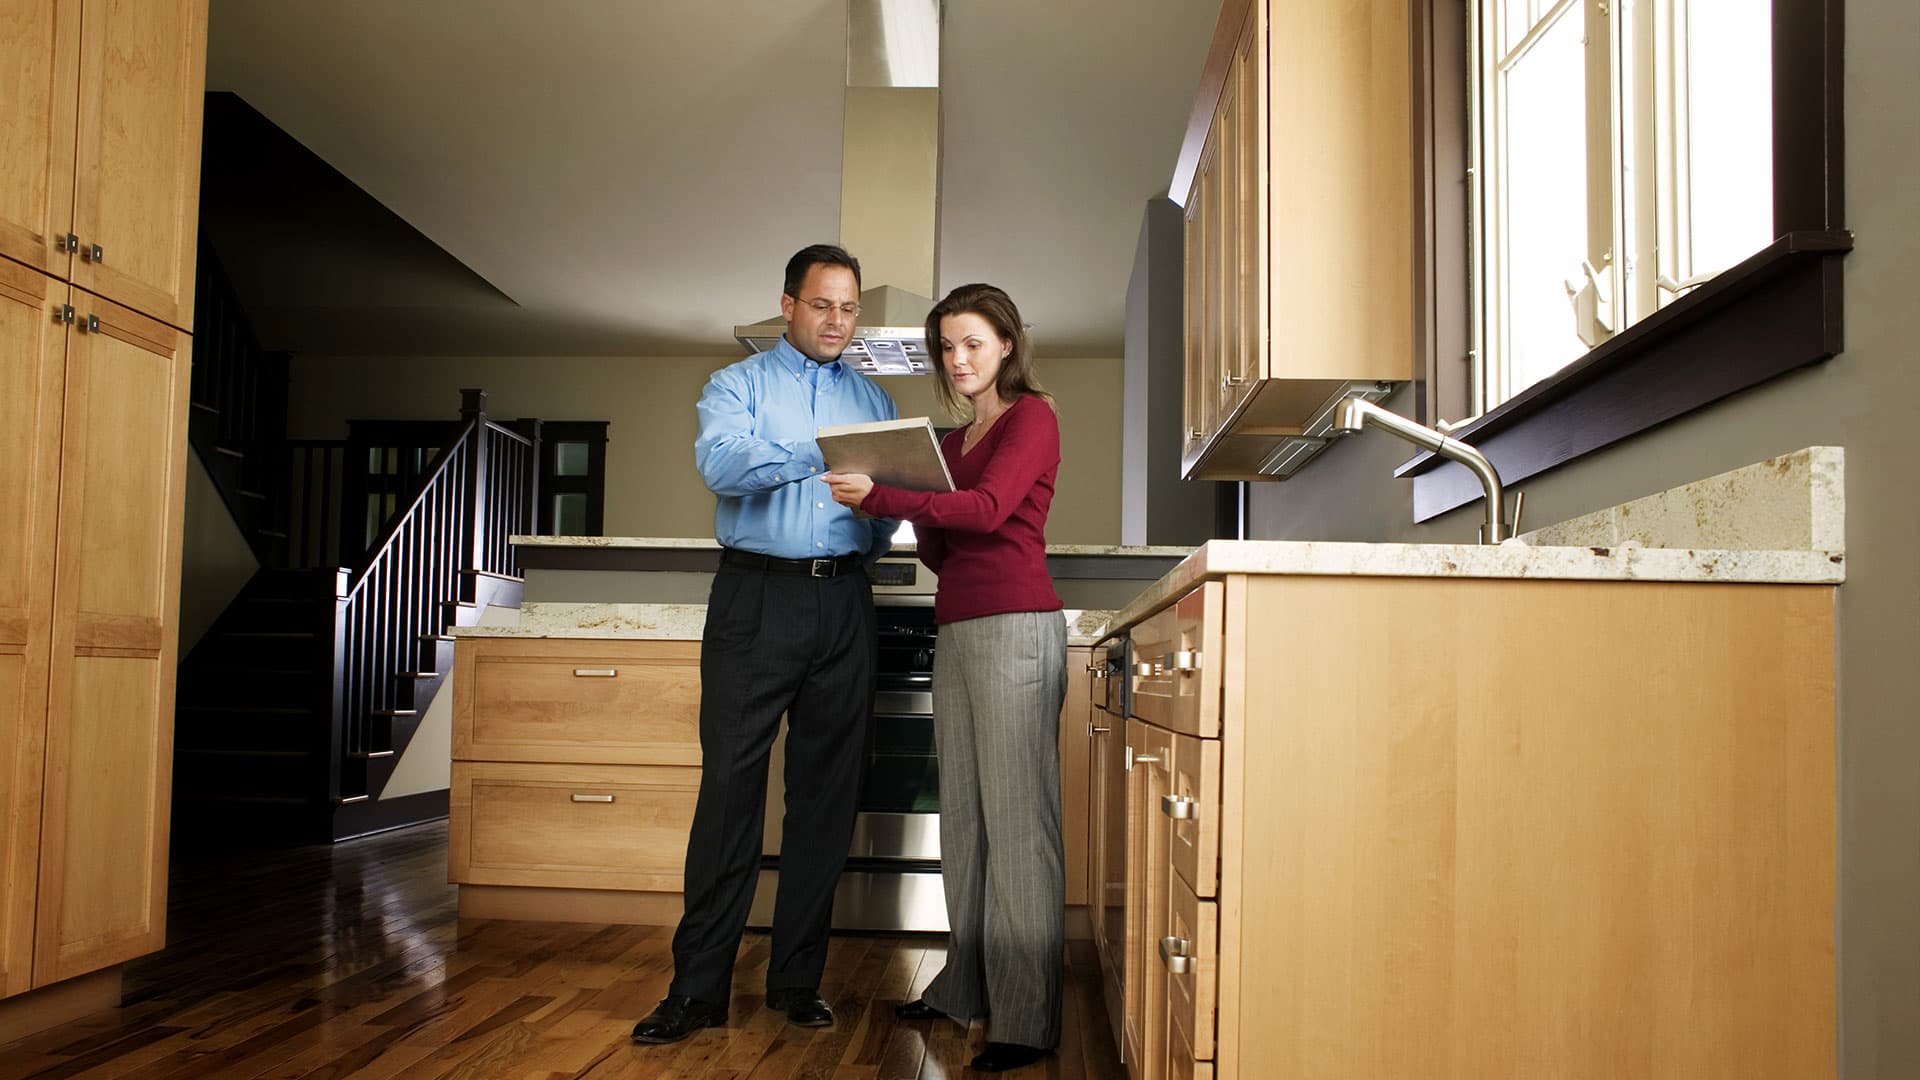 Inspección de viviendas antes de comprar una casa: consejos y recomendaciones